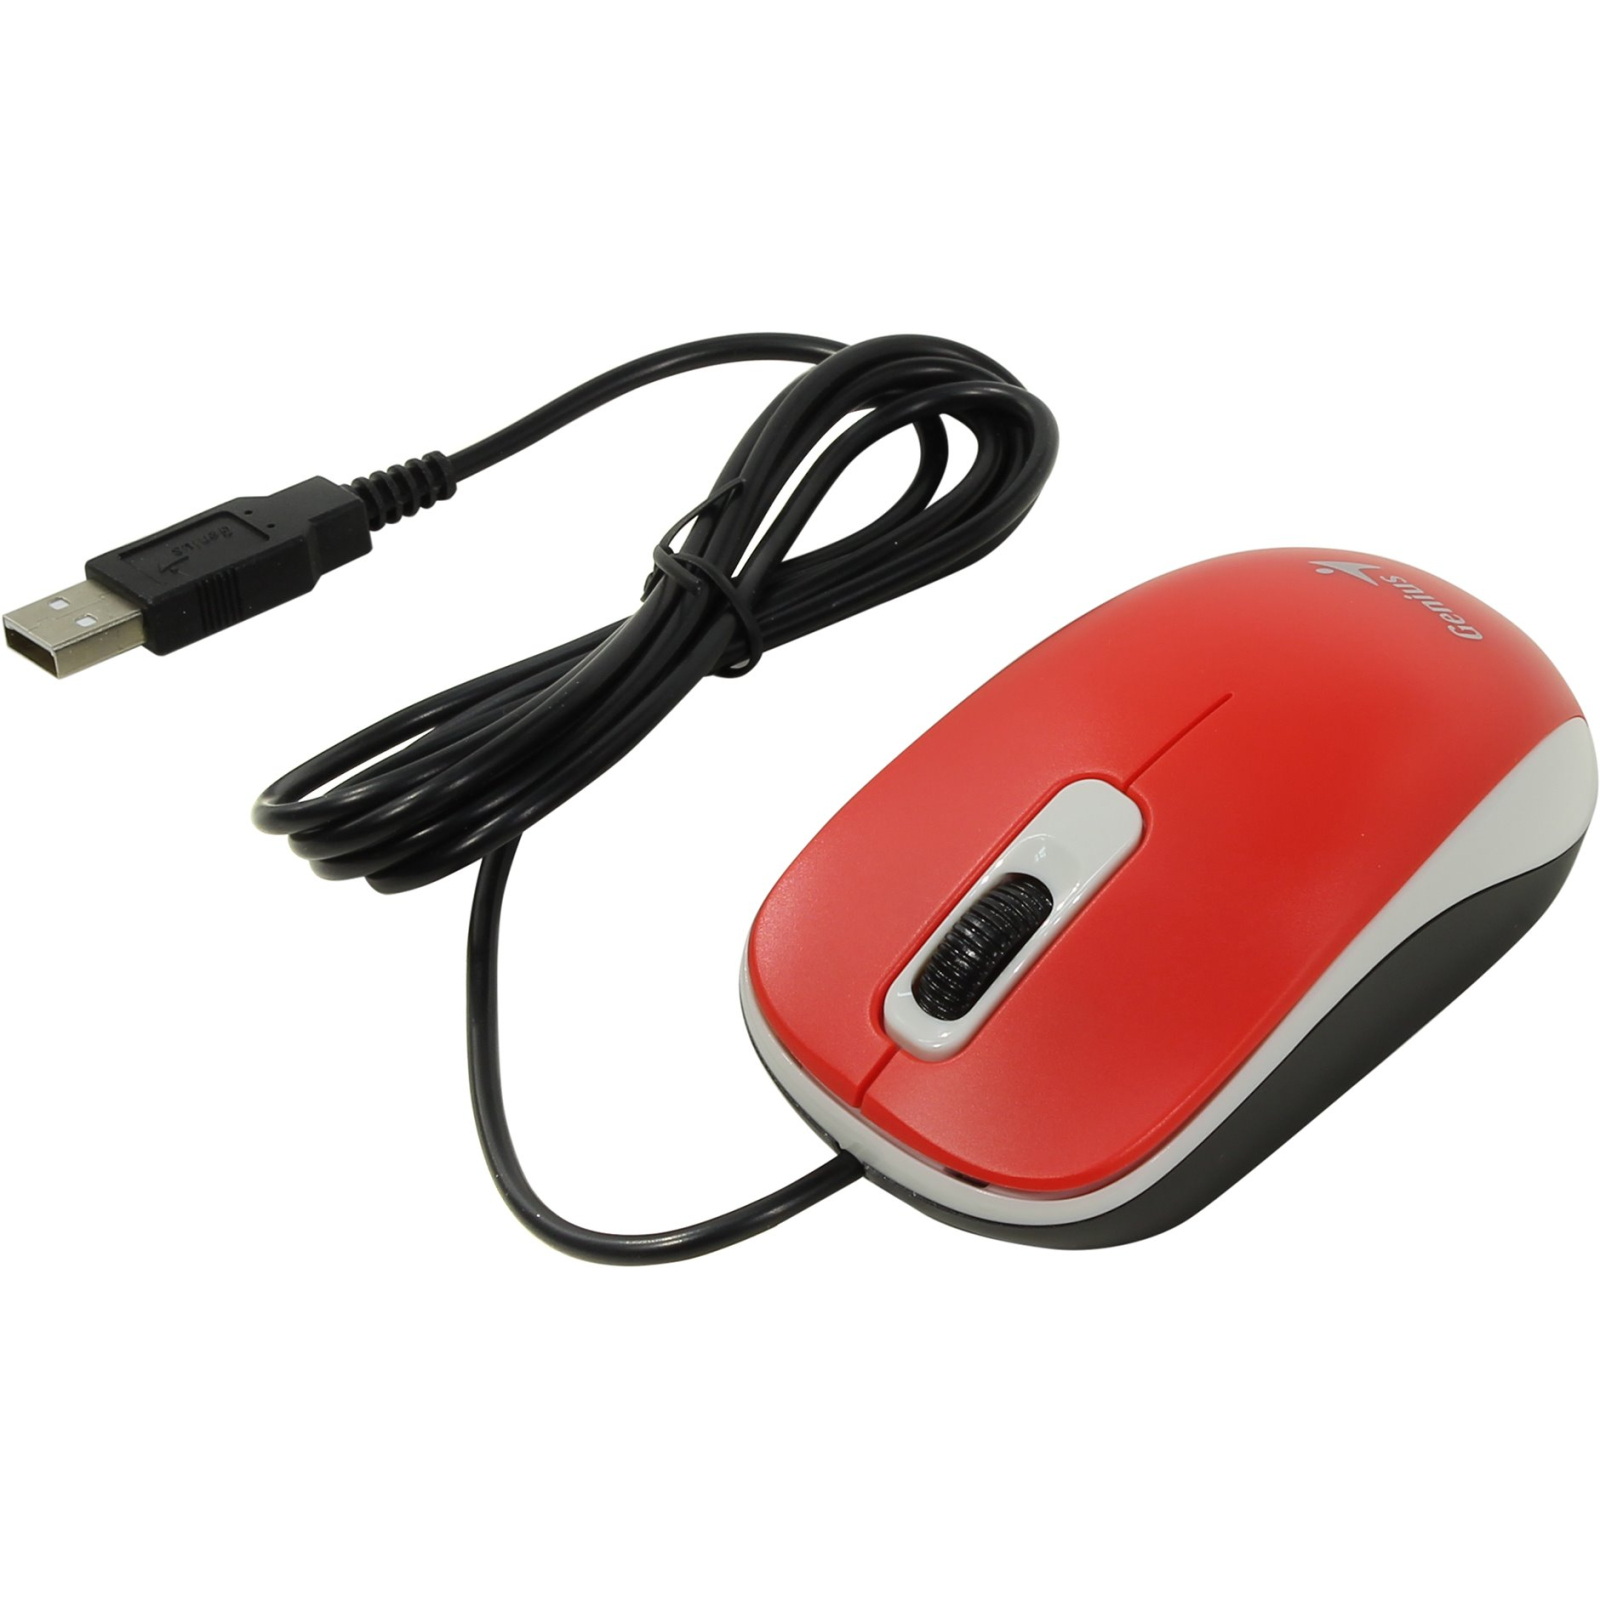 Мышка Genius DX-110 USB Black (31010116100) изображение 2